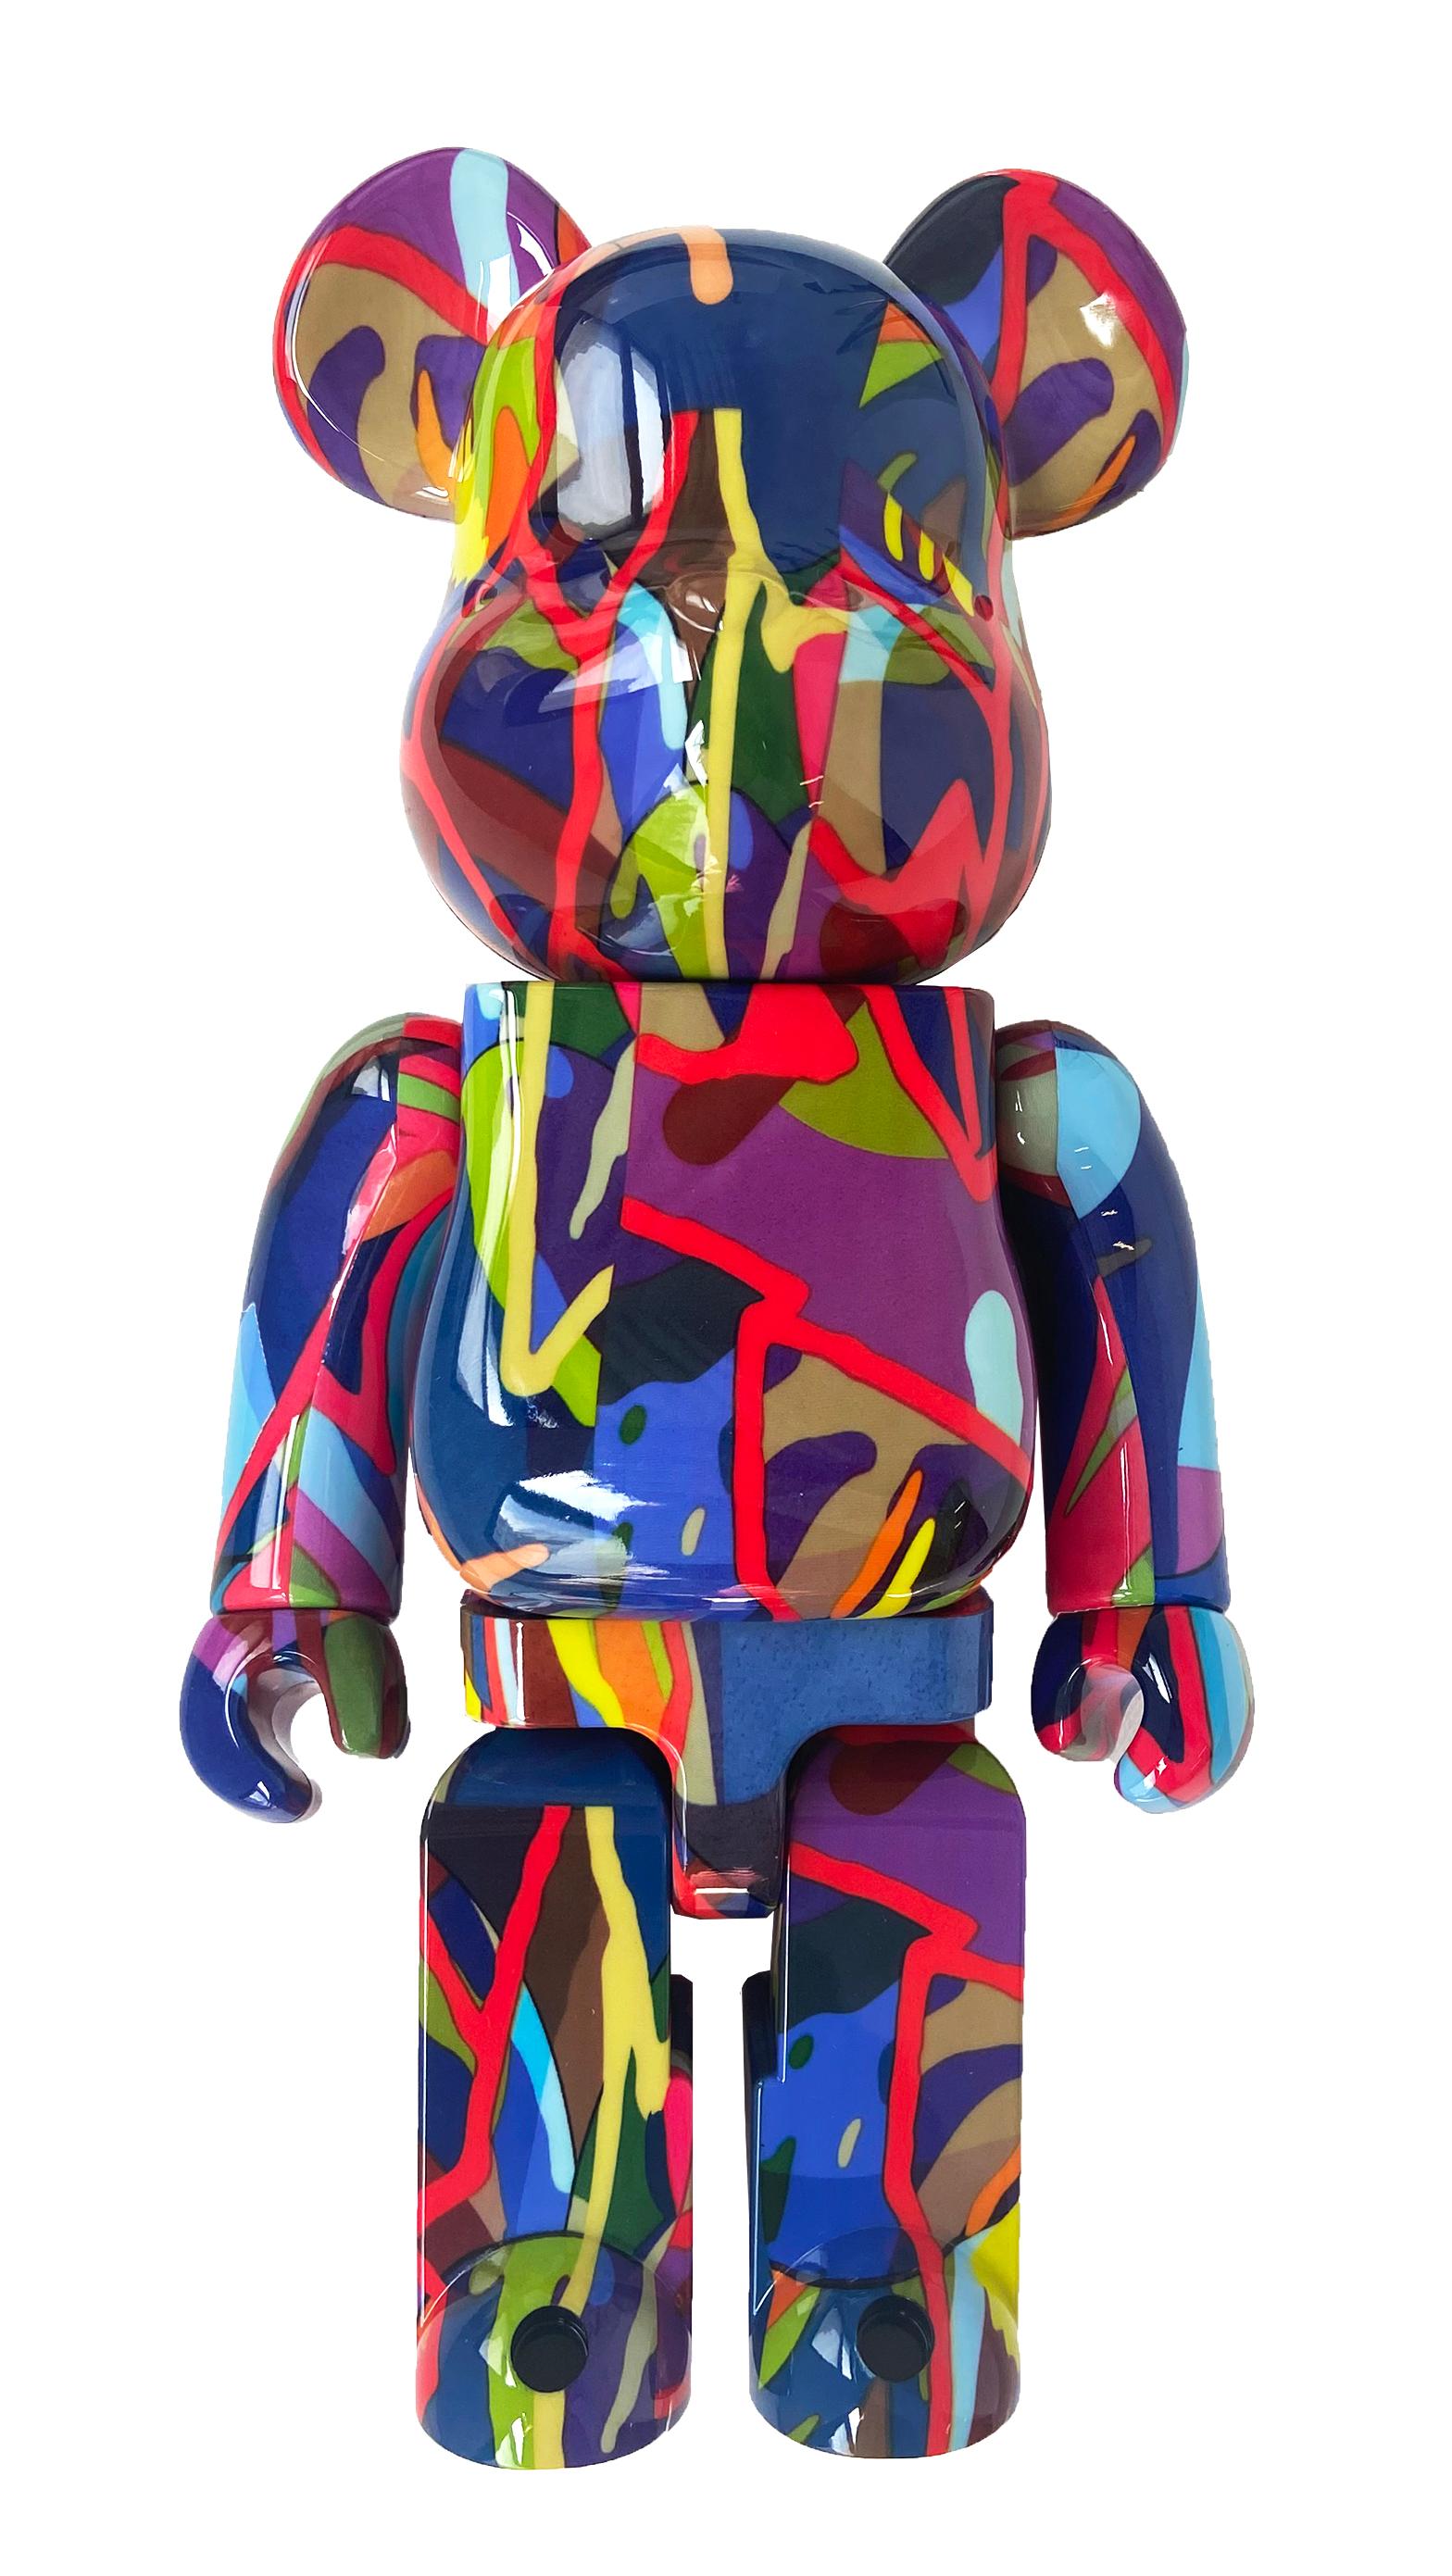 KAWS Tension Bearbrick 400%:
Diese begehrte KAWS Tension Be@rbrick-Figur weist die charakteristischen "X"-Zeichen des Künstlers und die leuchtenden, satten Farben auf, die für seine abstrakteren Werke auf Leinwand stehen. 

Dieses ausverkaufte Werk